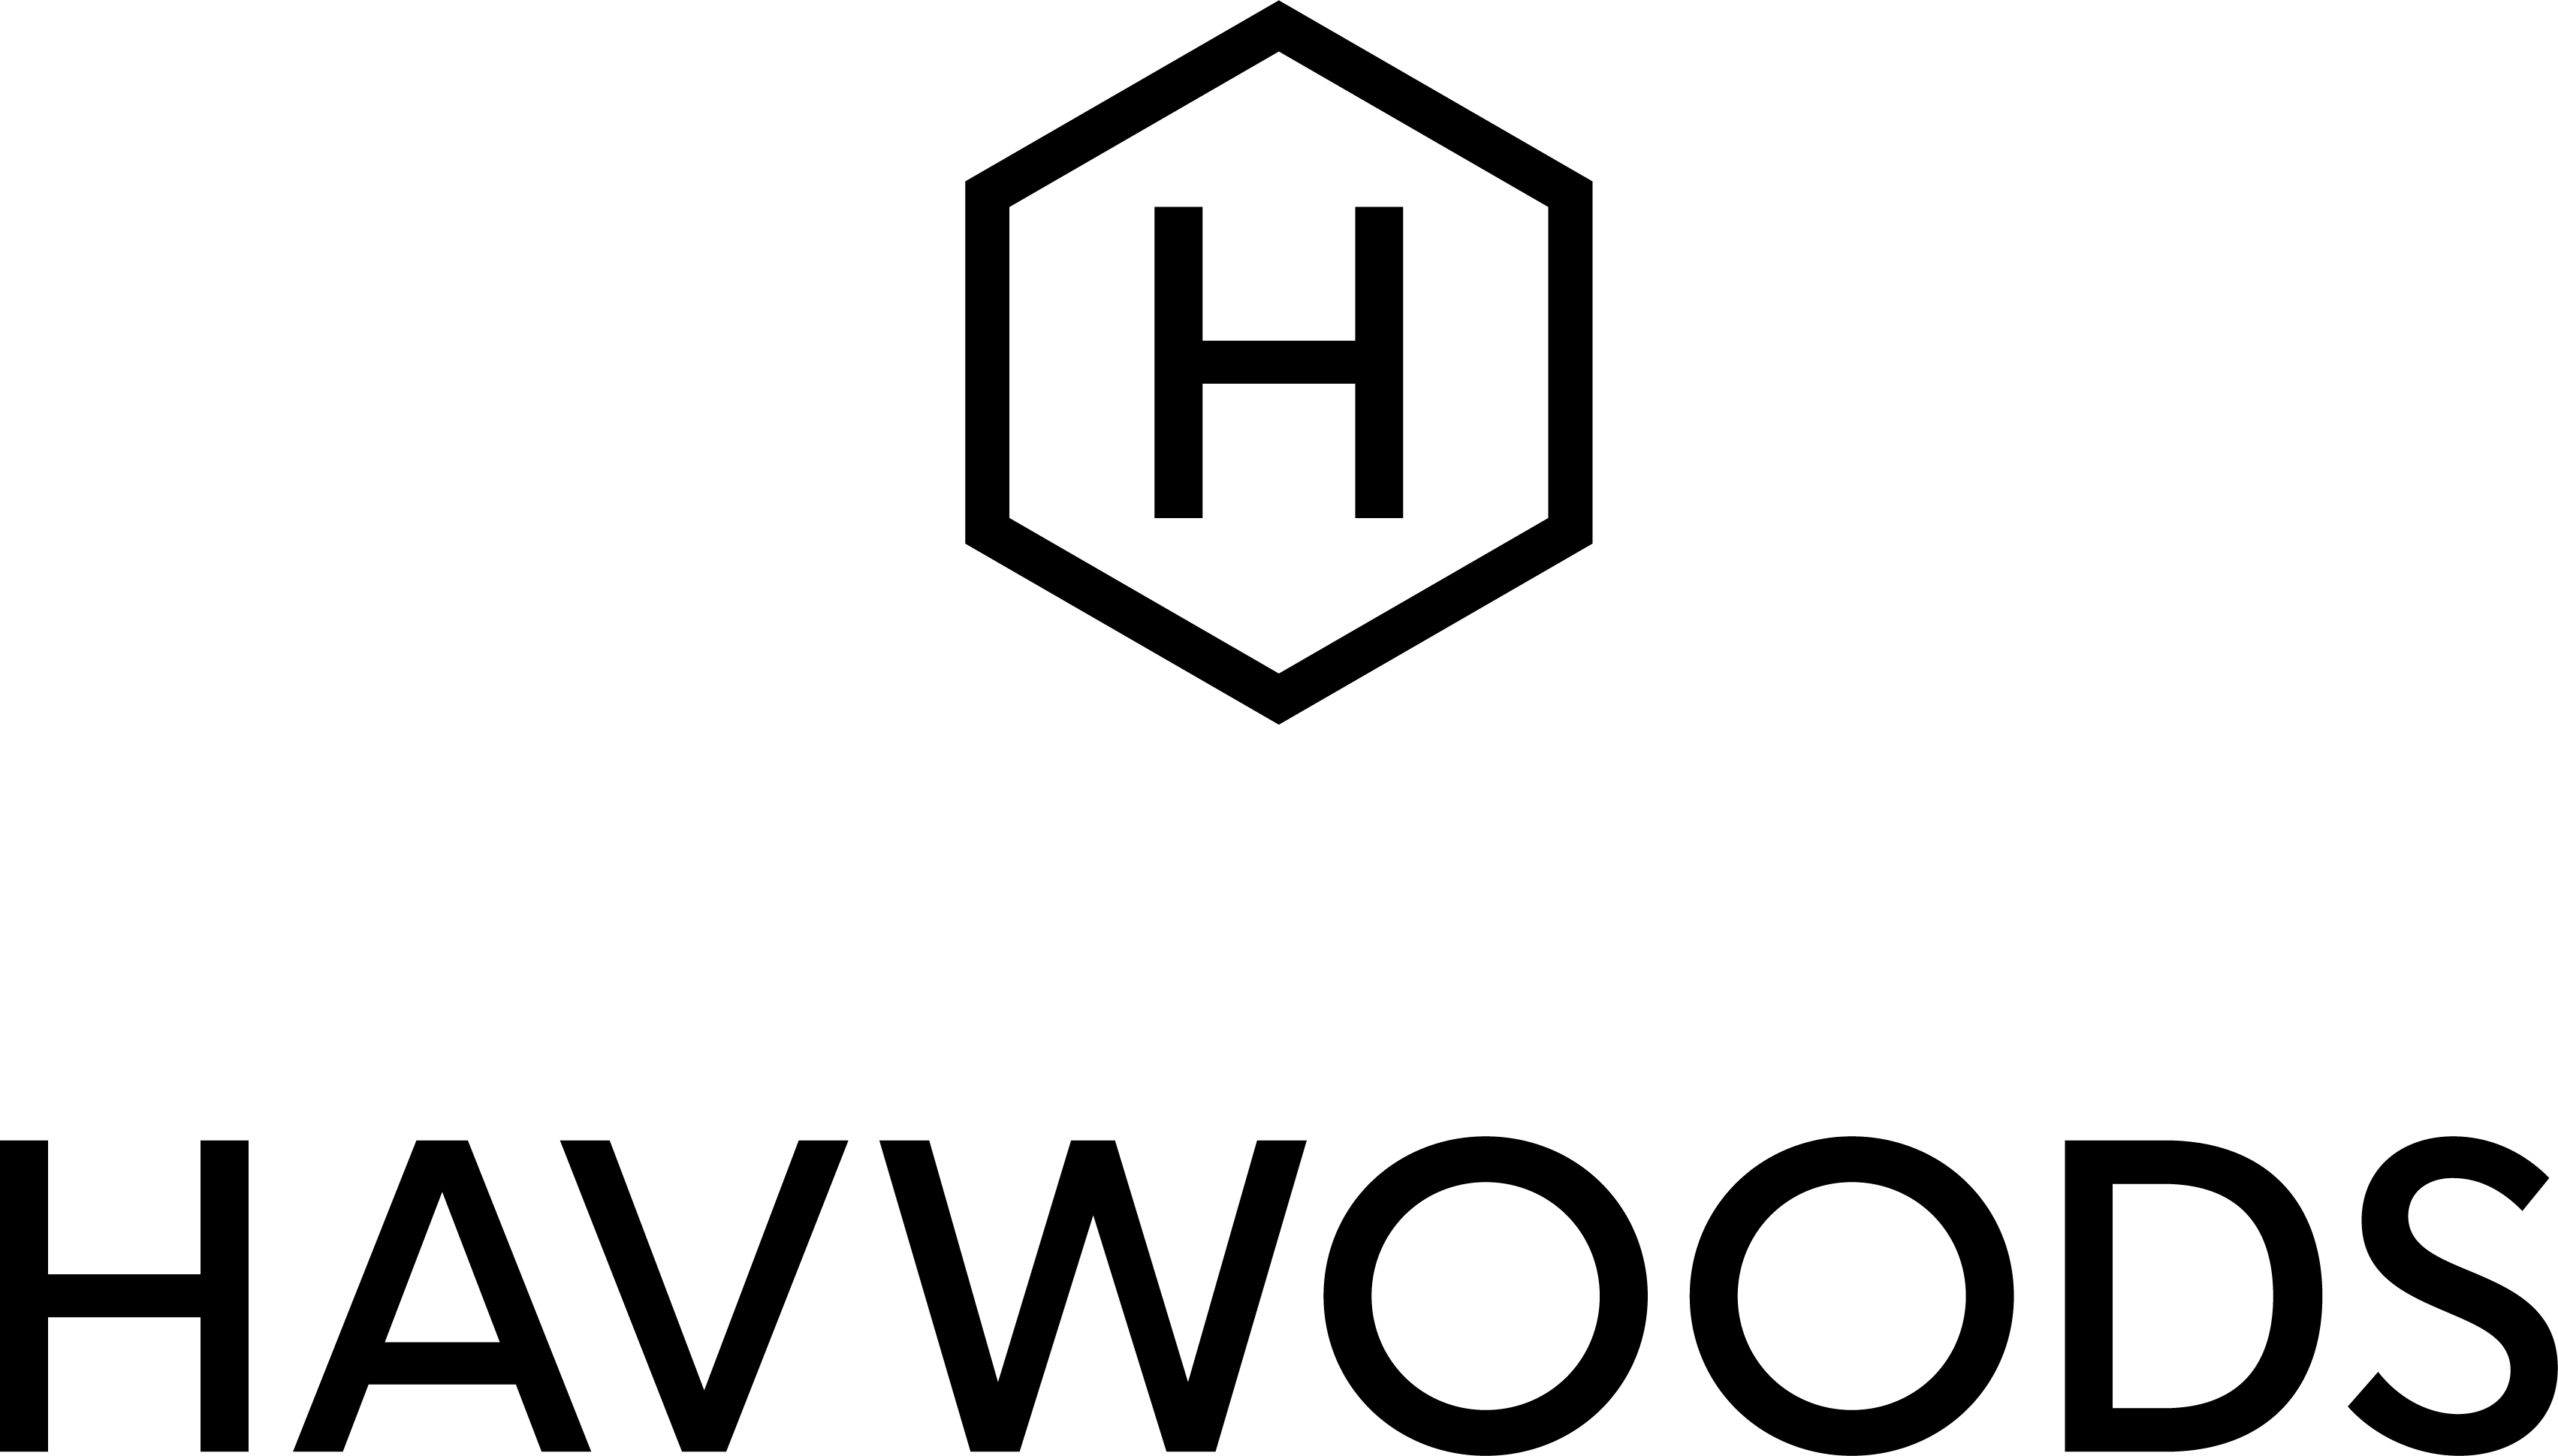 Havwoods